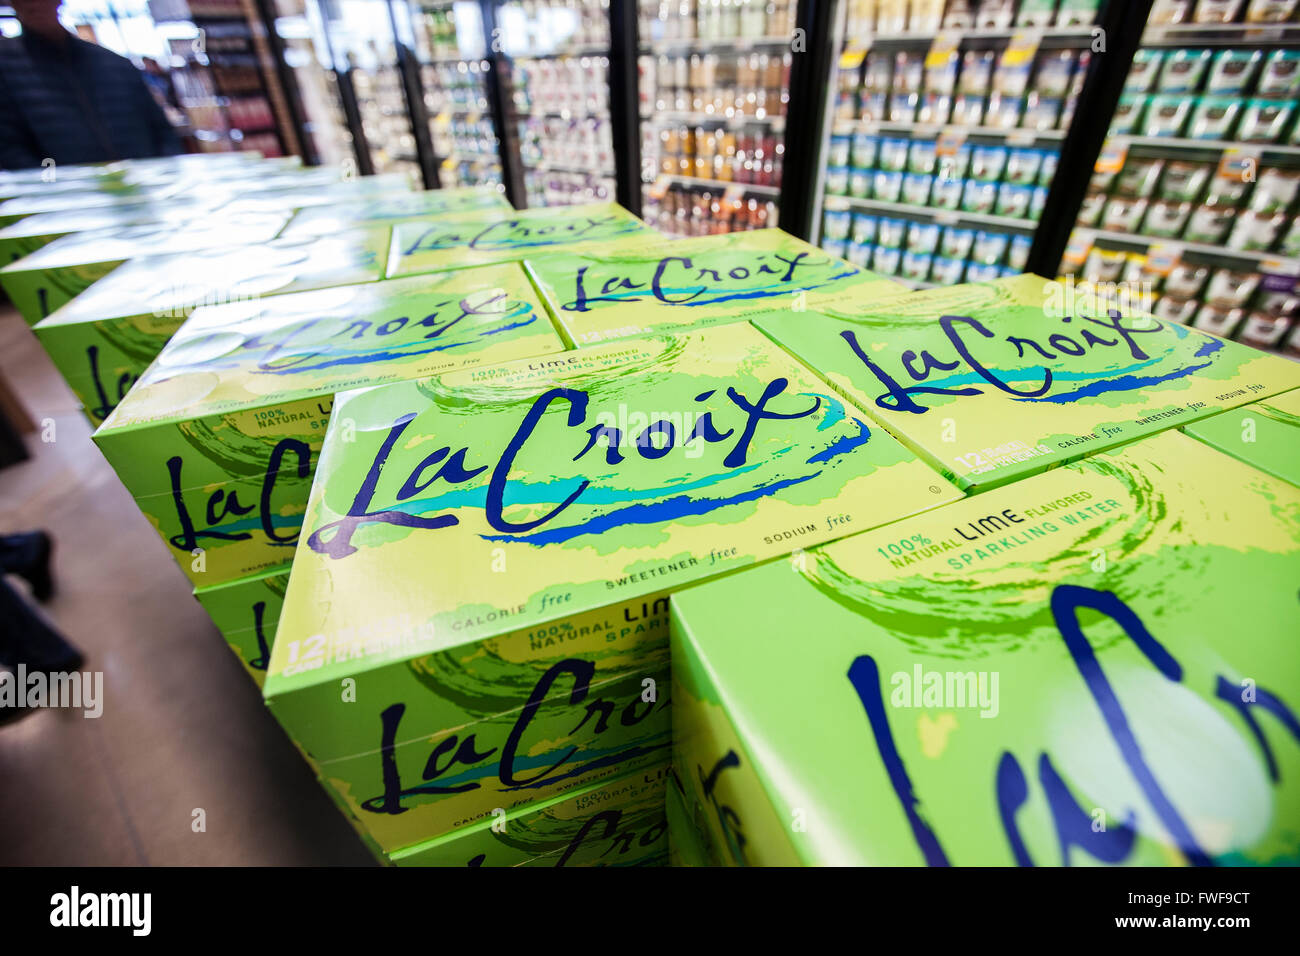 Casi di La Croix acqua frizzante impilati come un display nel corridoio di un negozio di alimentari Foto Stock